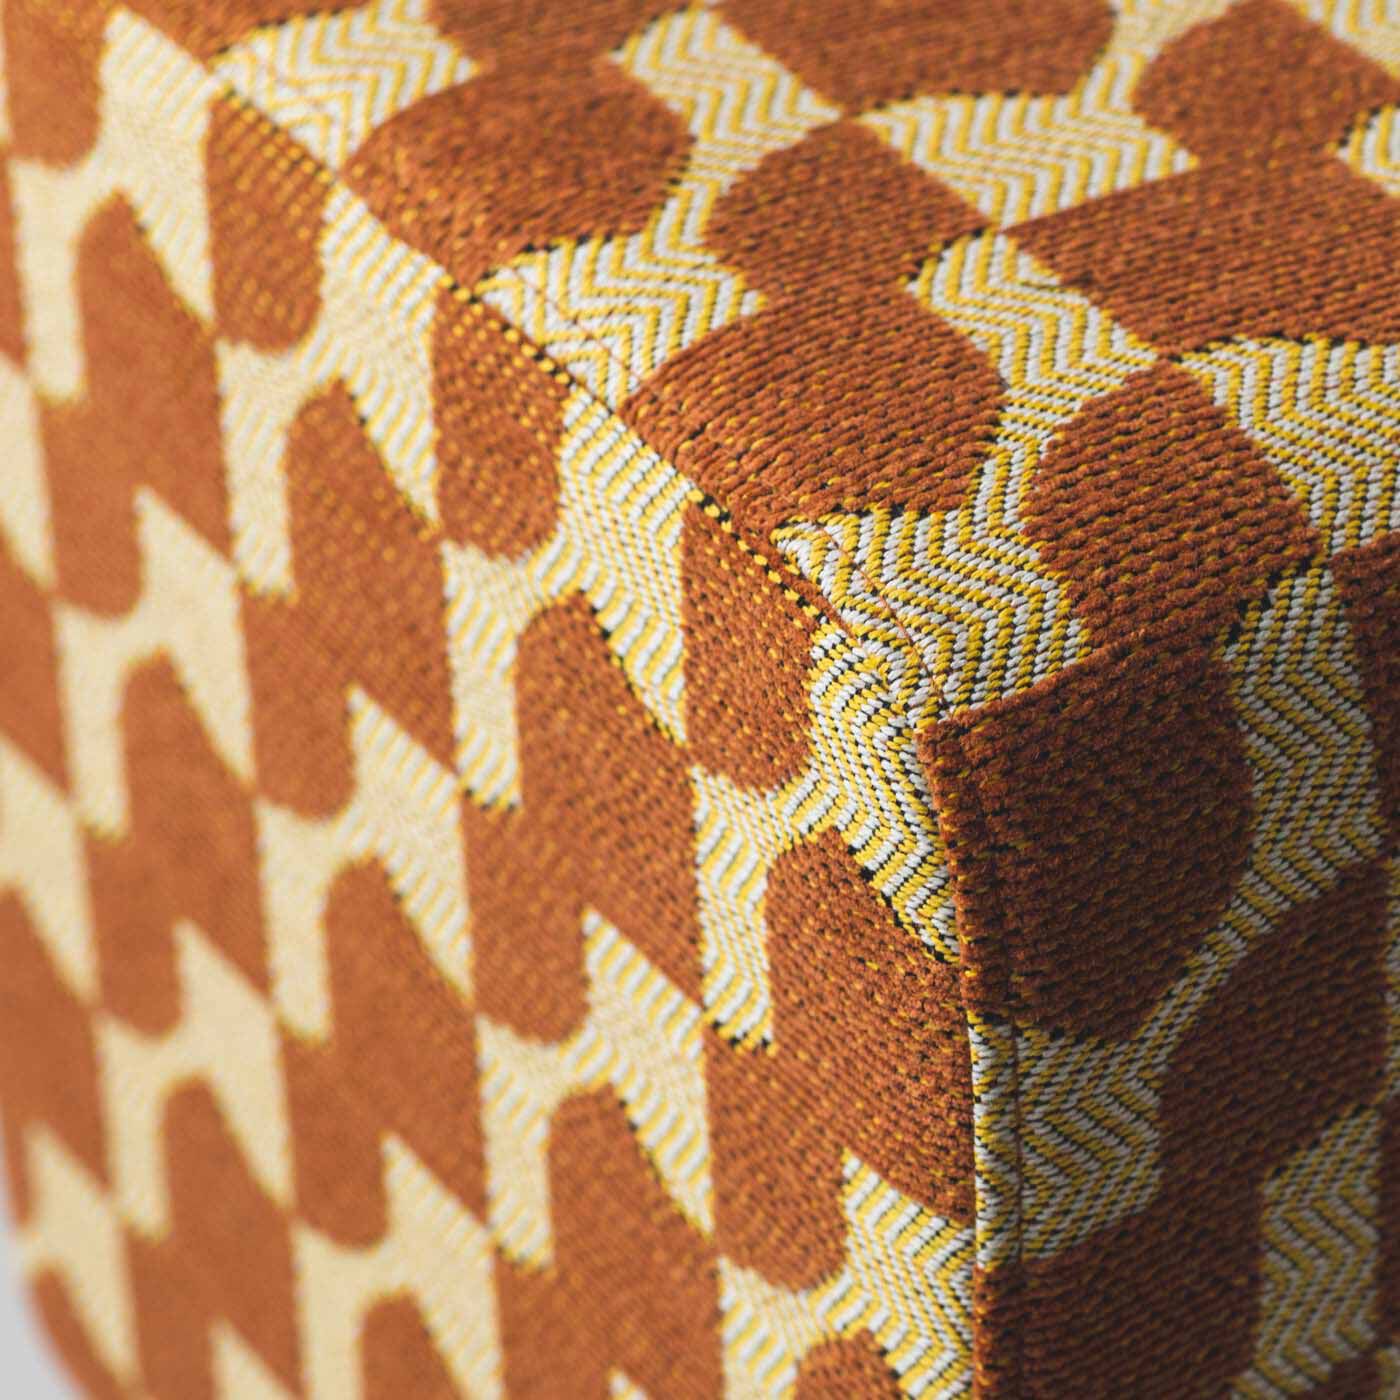 ＆Stories|テキスタイルデザイナーと家具職人が作った 播州ジャカード織のスツール〈レモンティー色〉|モール糸を使って凹凸感を出し、手ざわりよく仕上げています。